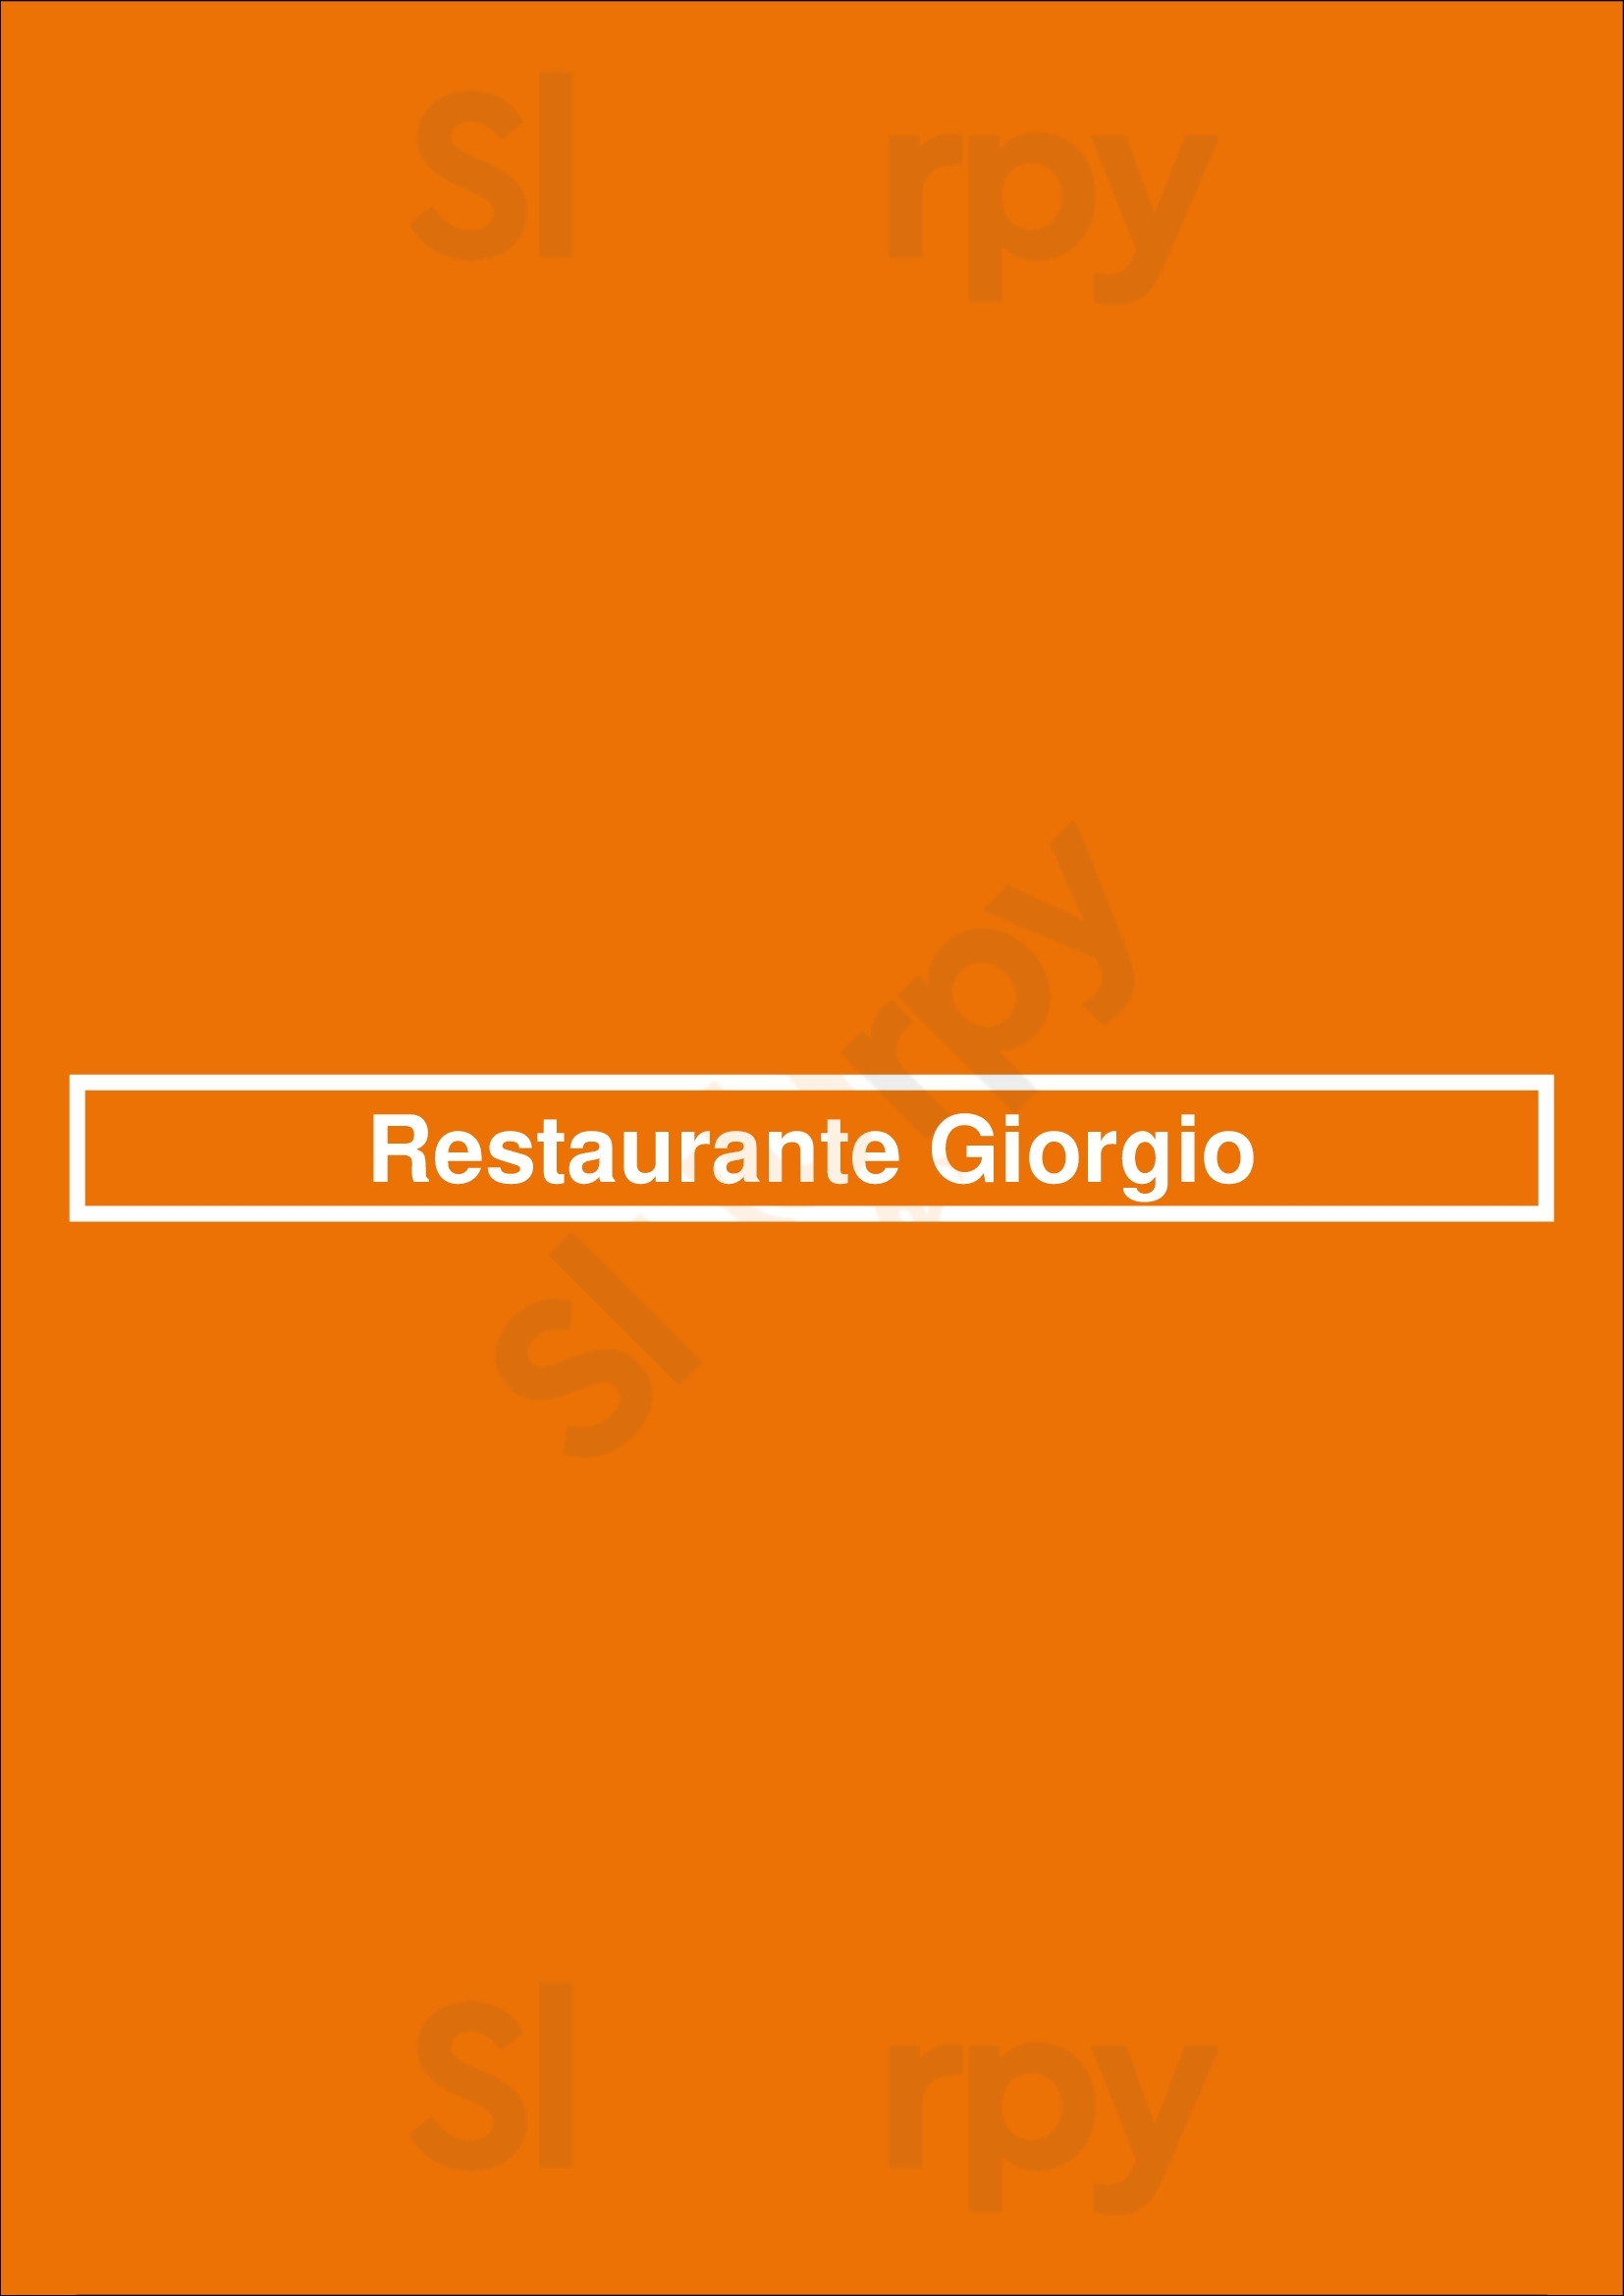 Restaurante Giorgio Lloret de Mar Menu - 1